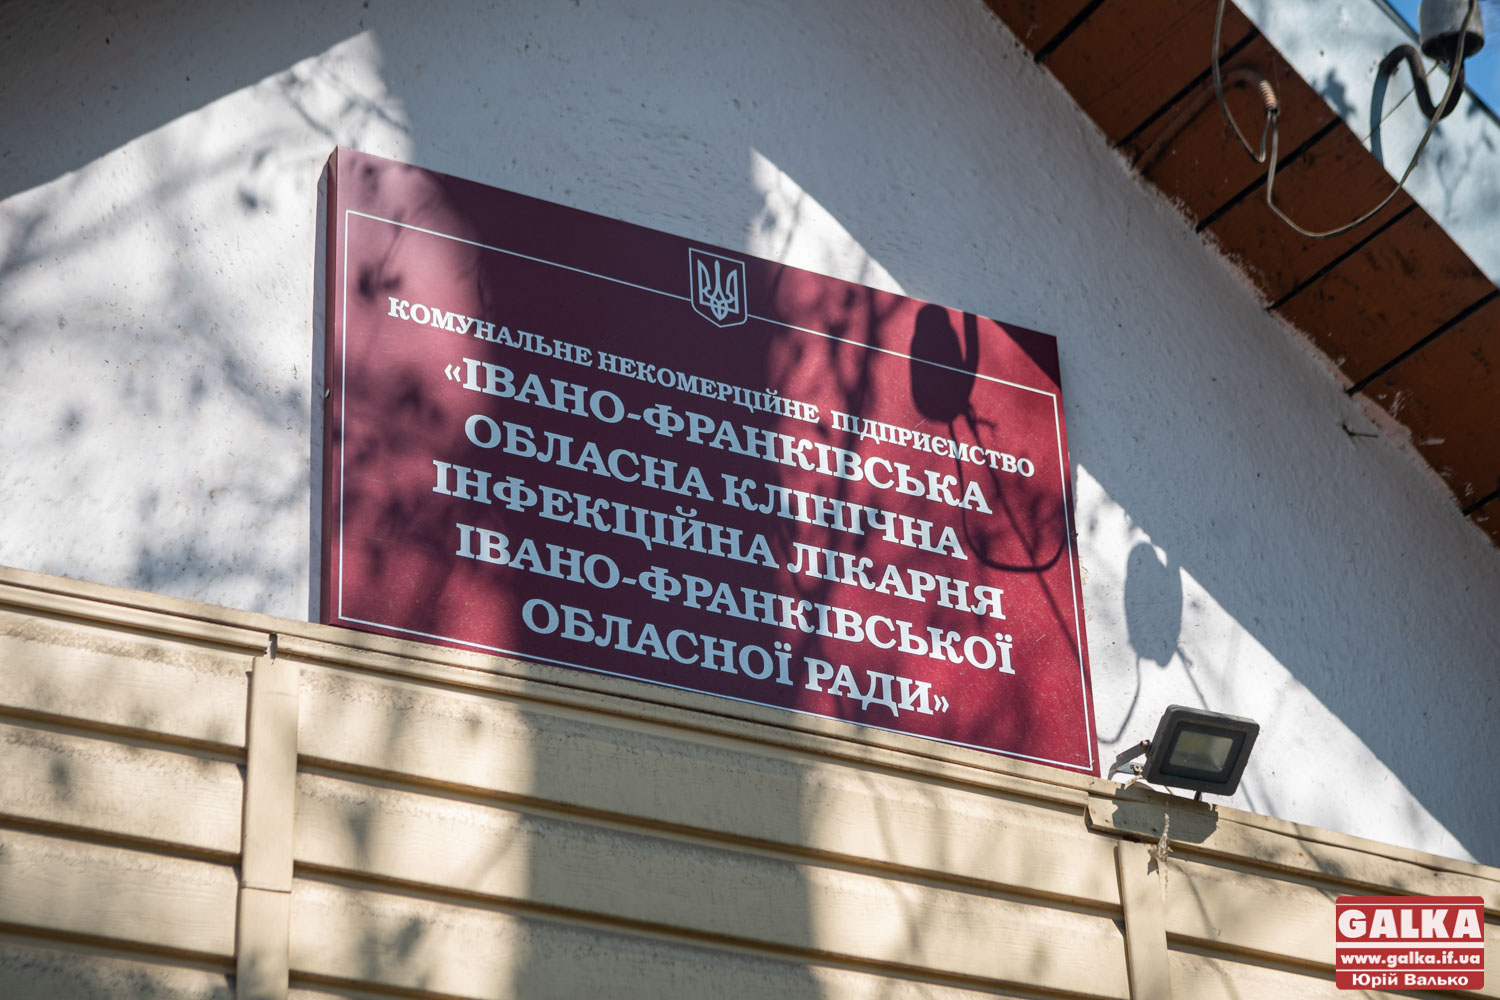 Зі скандалу почала роботу комісія на конкурс керівника обласної інфекційної лікарні (ФОТО)